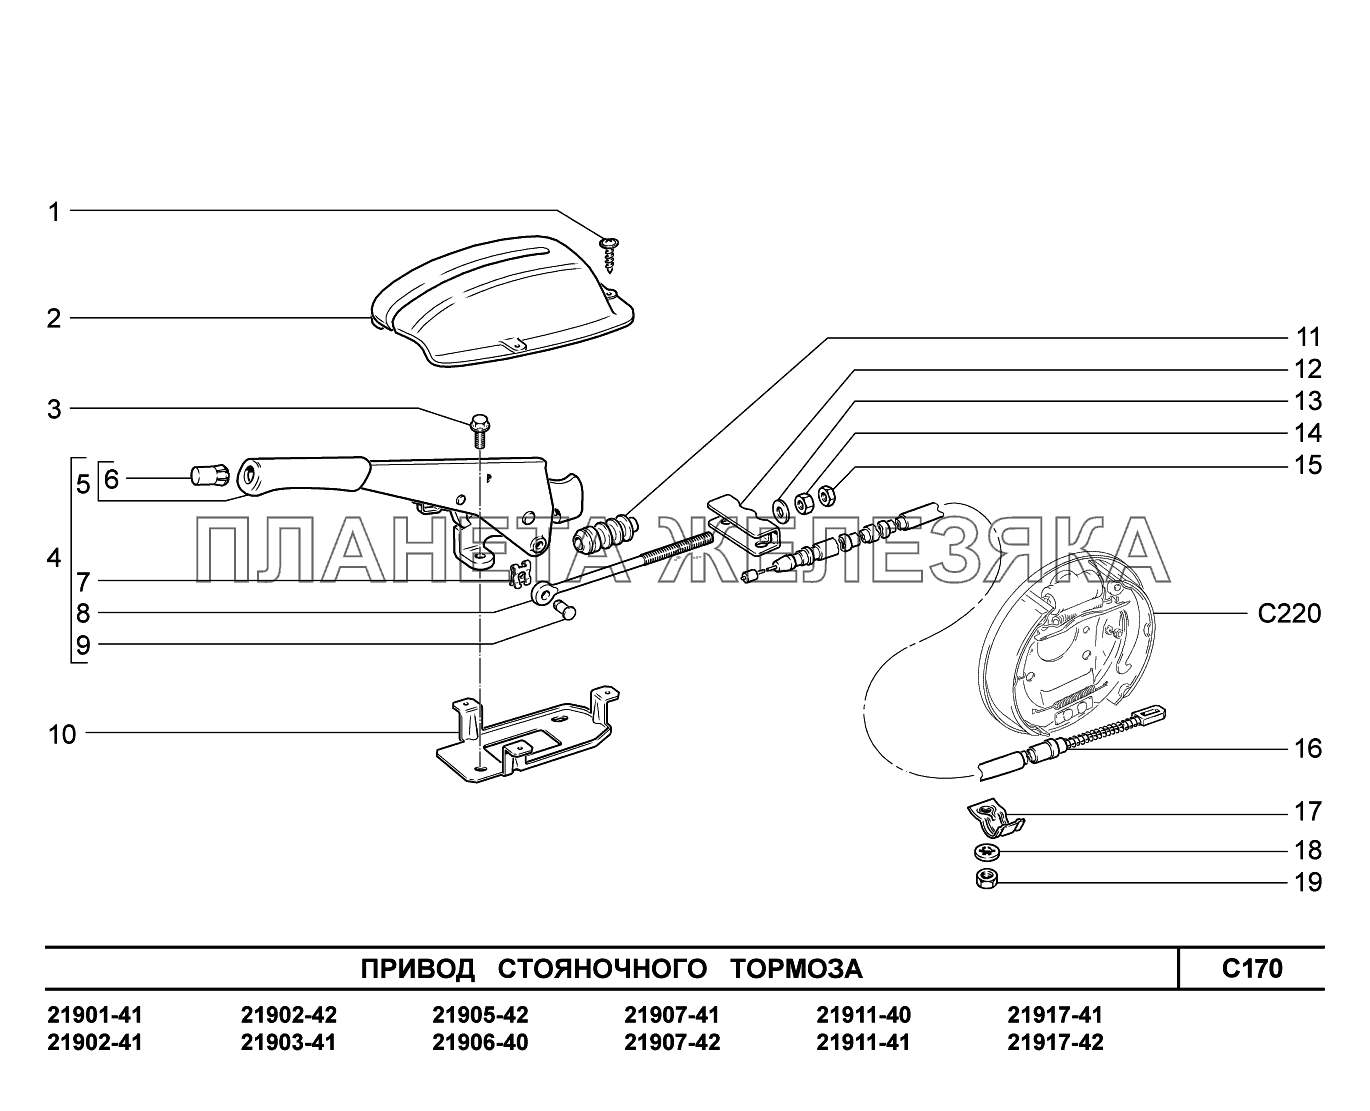 C170. Привод стояночного тормоза Lada Granta-2190